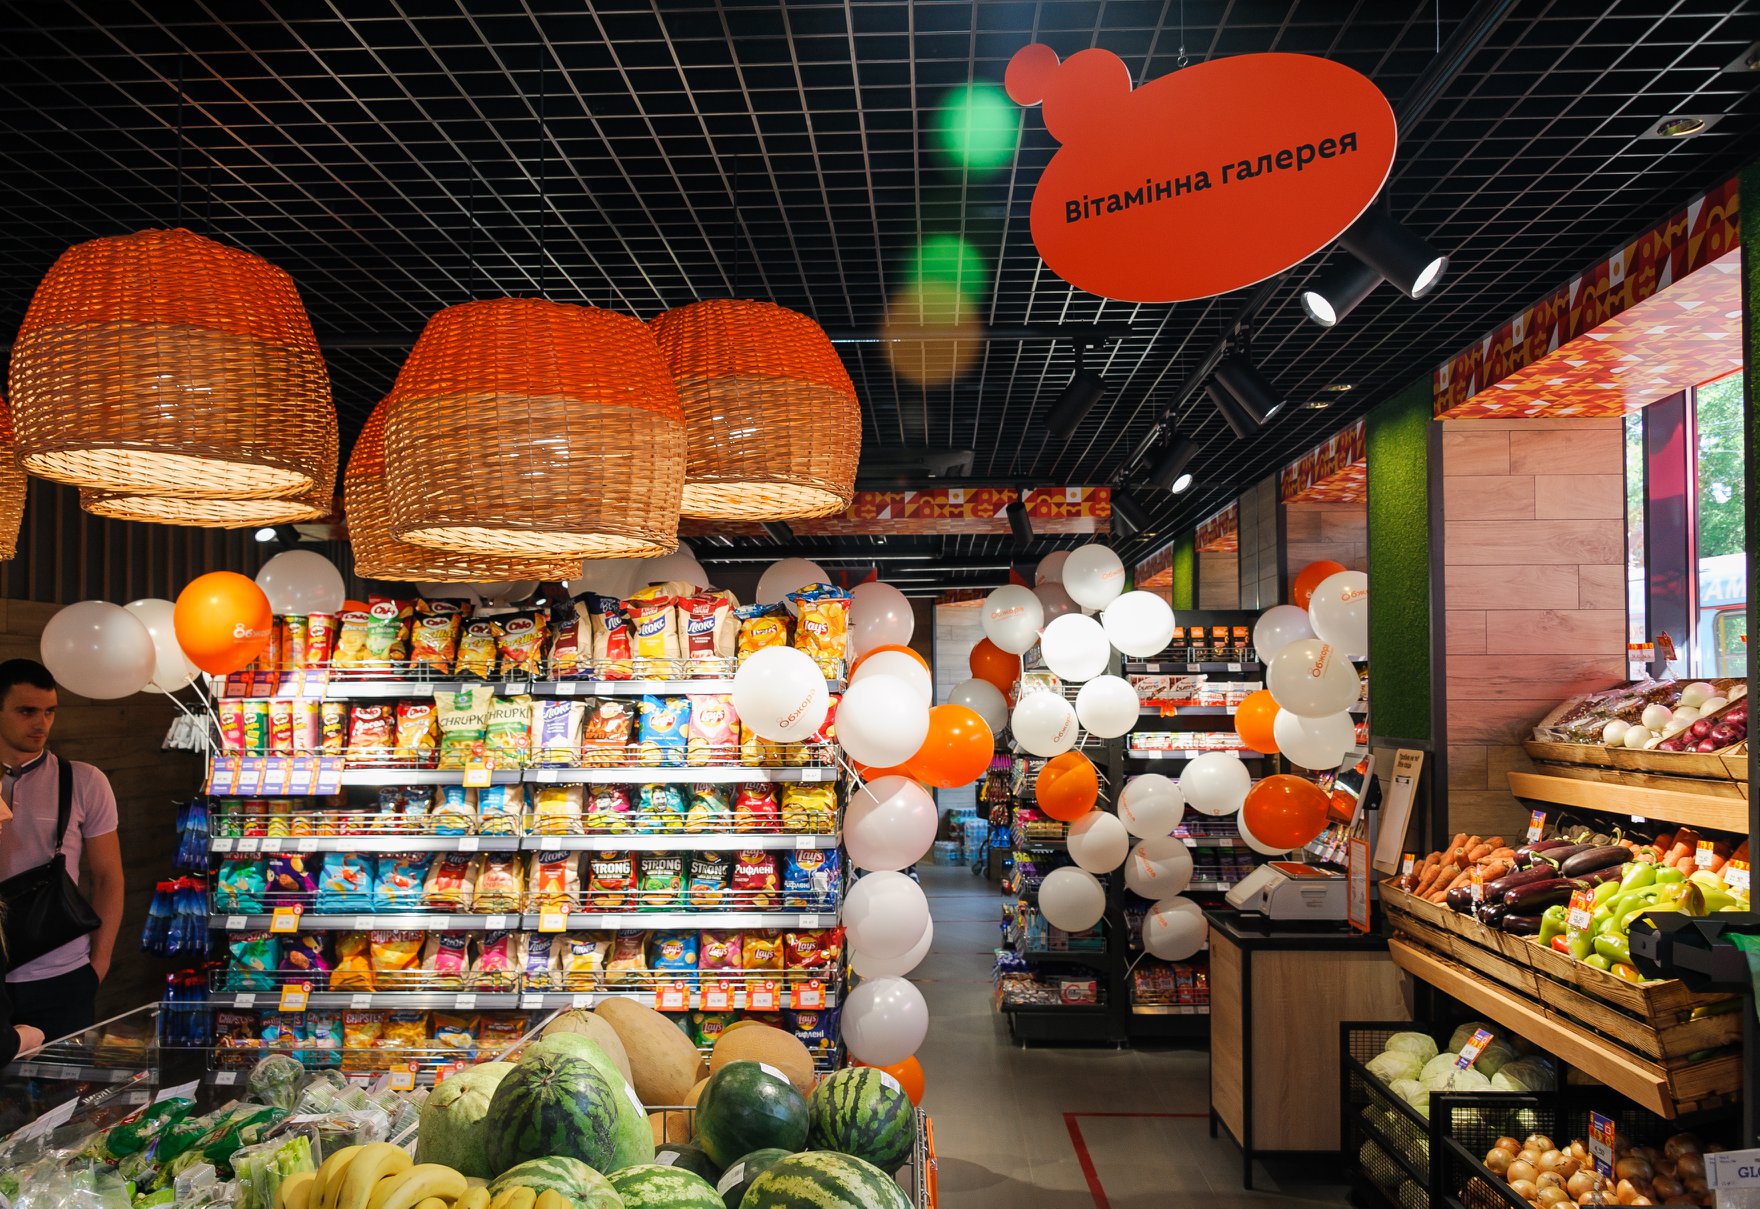 Як мережа супермаркетів «Обжора» знаходить працівників на OLX (кейс) – Офіційний блог OLX.ua